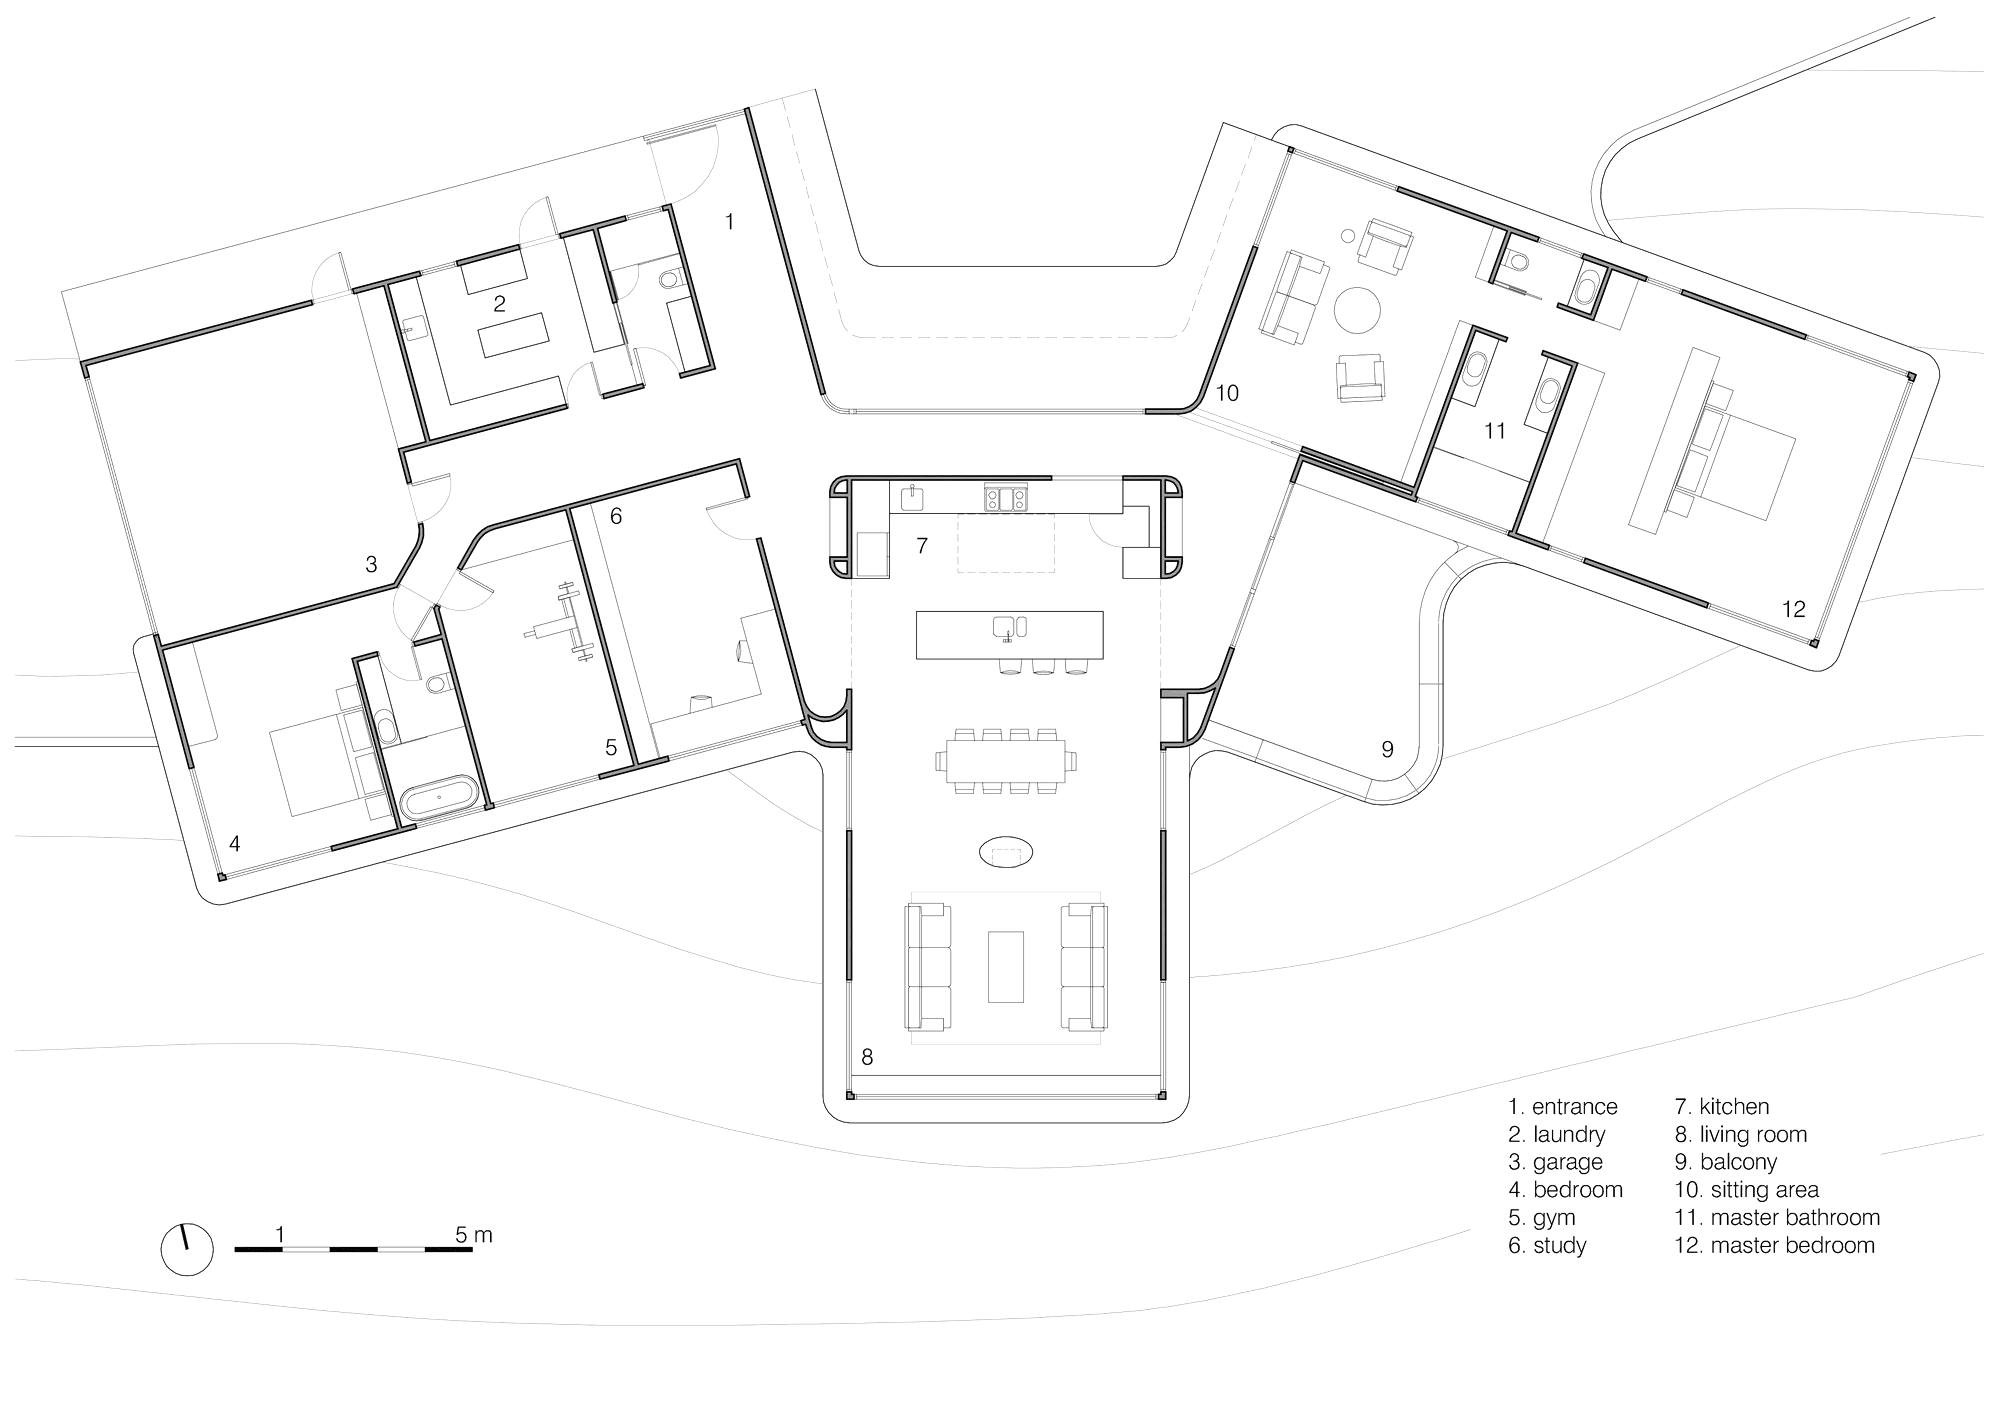 cbh floor plans lovely 20 inspirational garbett homes floor plans